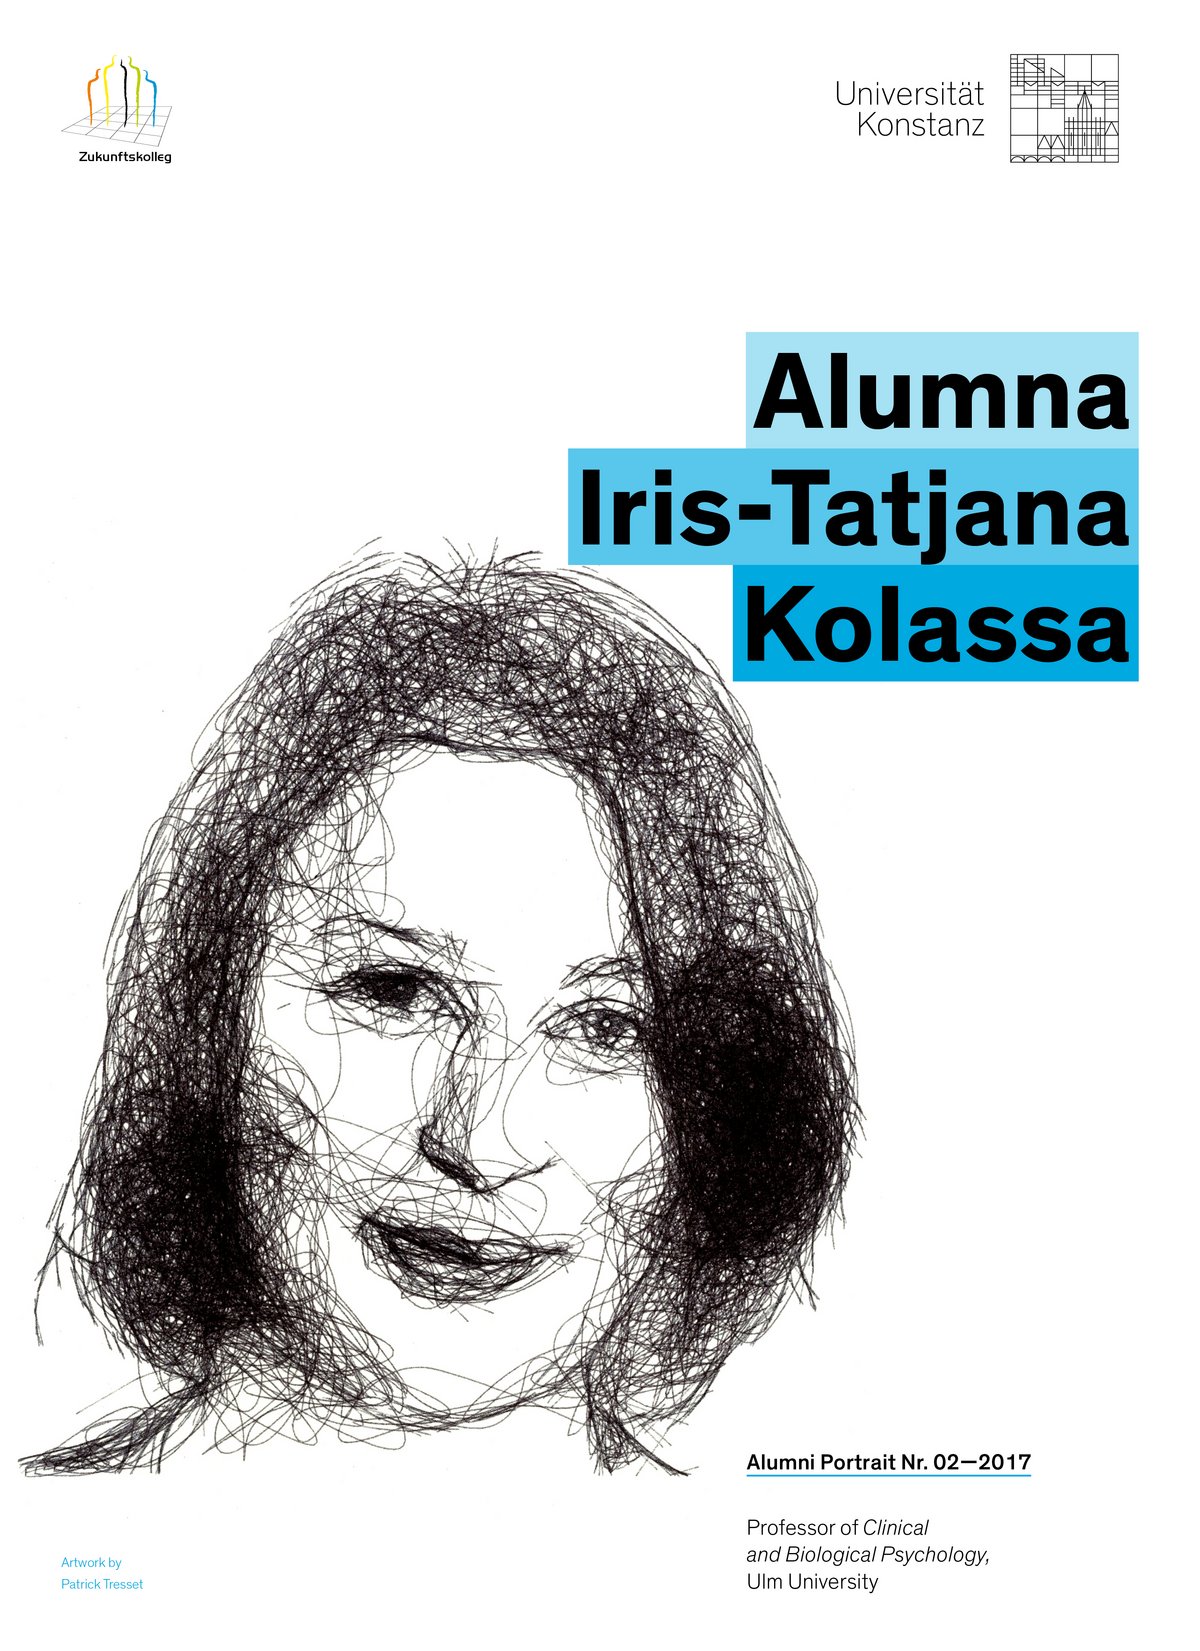 Poster Alumni Iris Tatjana Kolassa